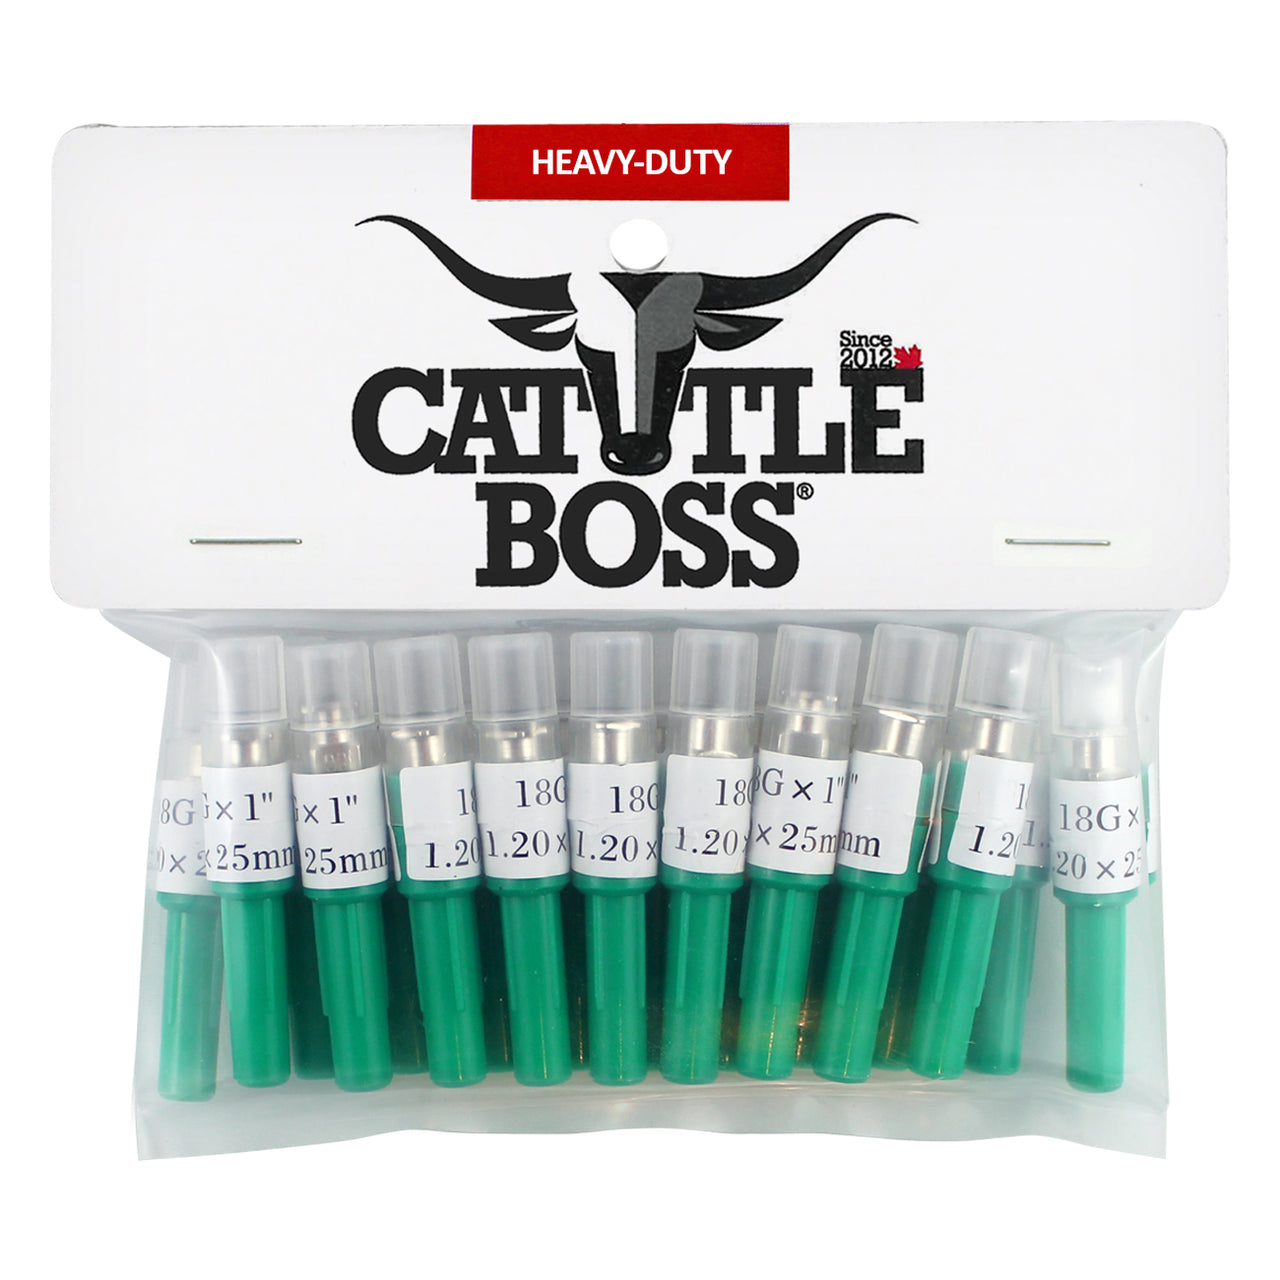 Cattle Boss Heavy-Duty Brass Hub (20 Pack) 18 X 1 - Needle Cattle Boss - Canada